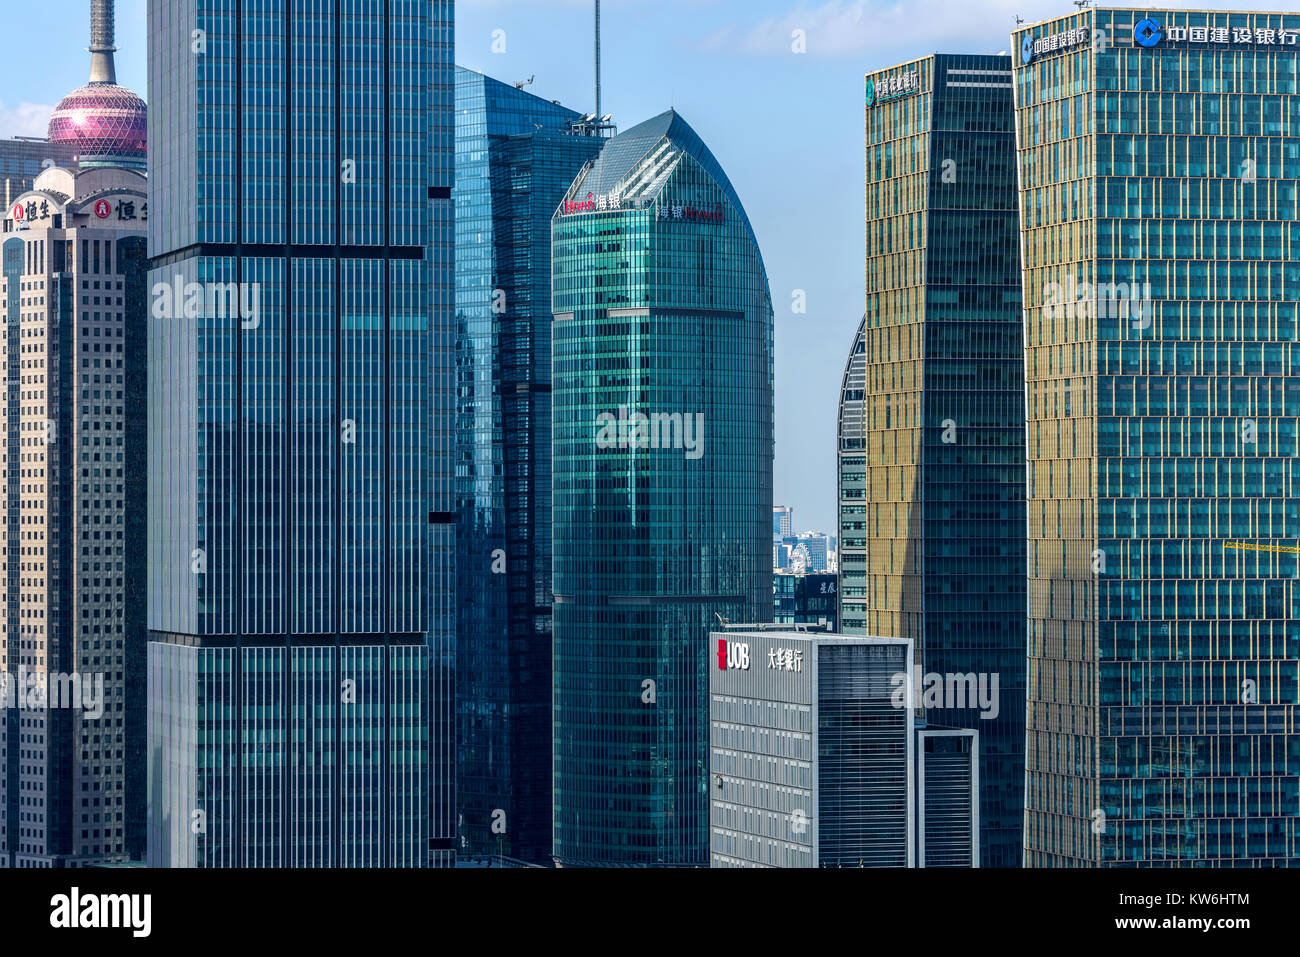 Moderno skyline di Shanghai - un primo piano colorato e moderno in vetro e acciaio edifici e skyline con sunny blue sky in Lujiazui, Shanghai, Cina. Foto Stock